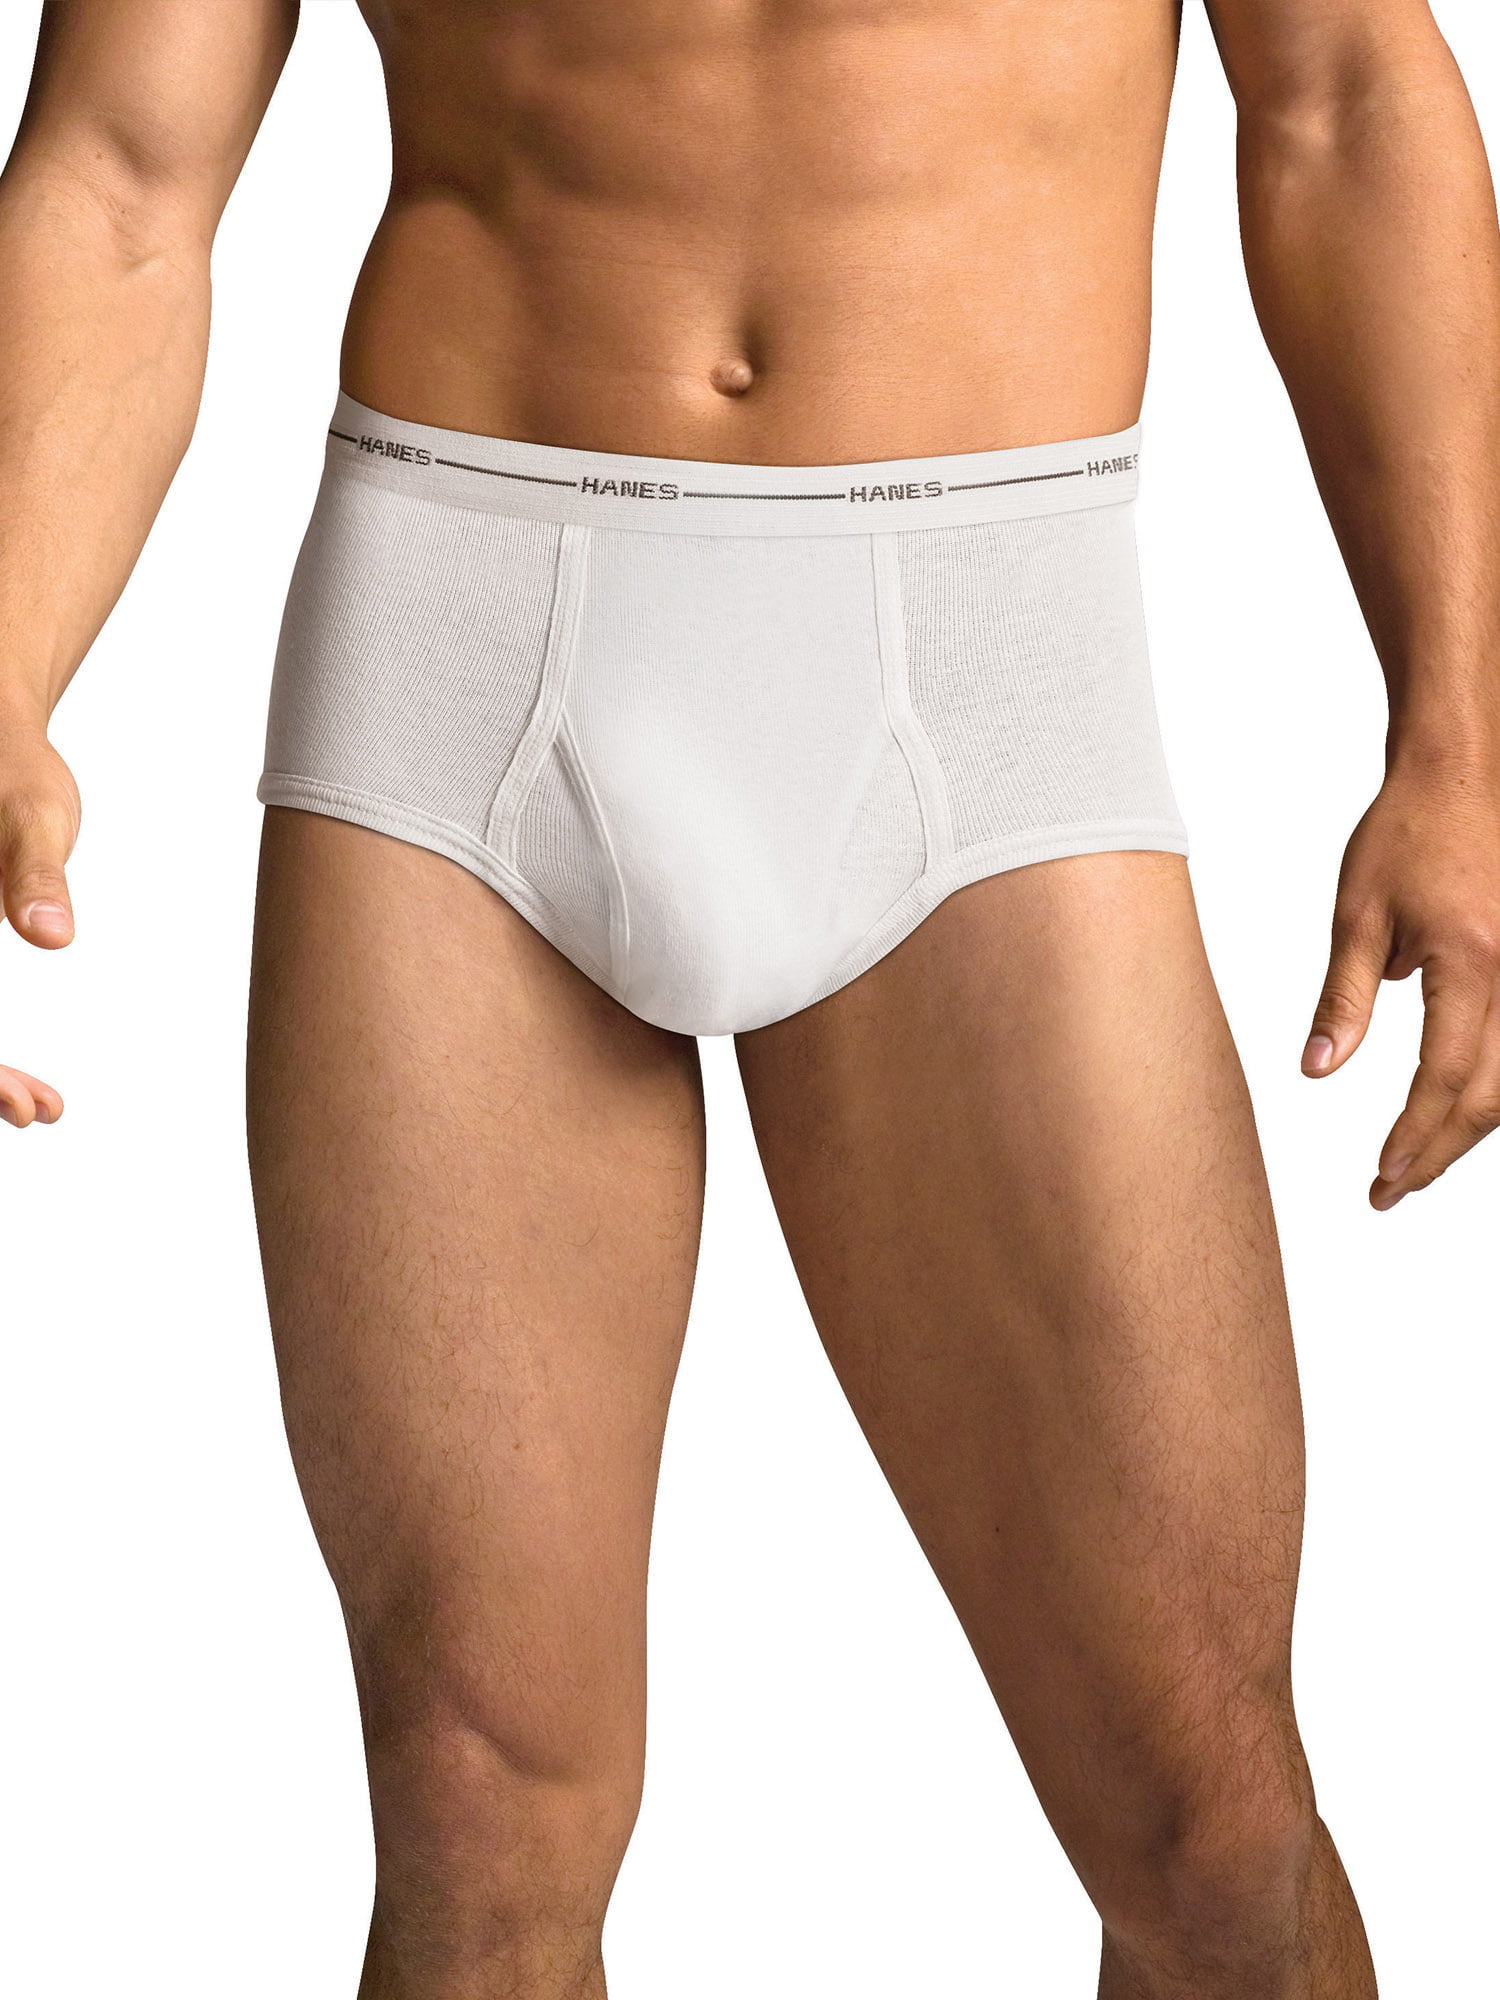 champion men's underwear brief 6 pack